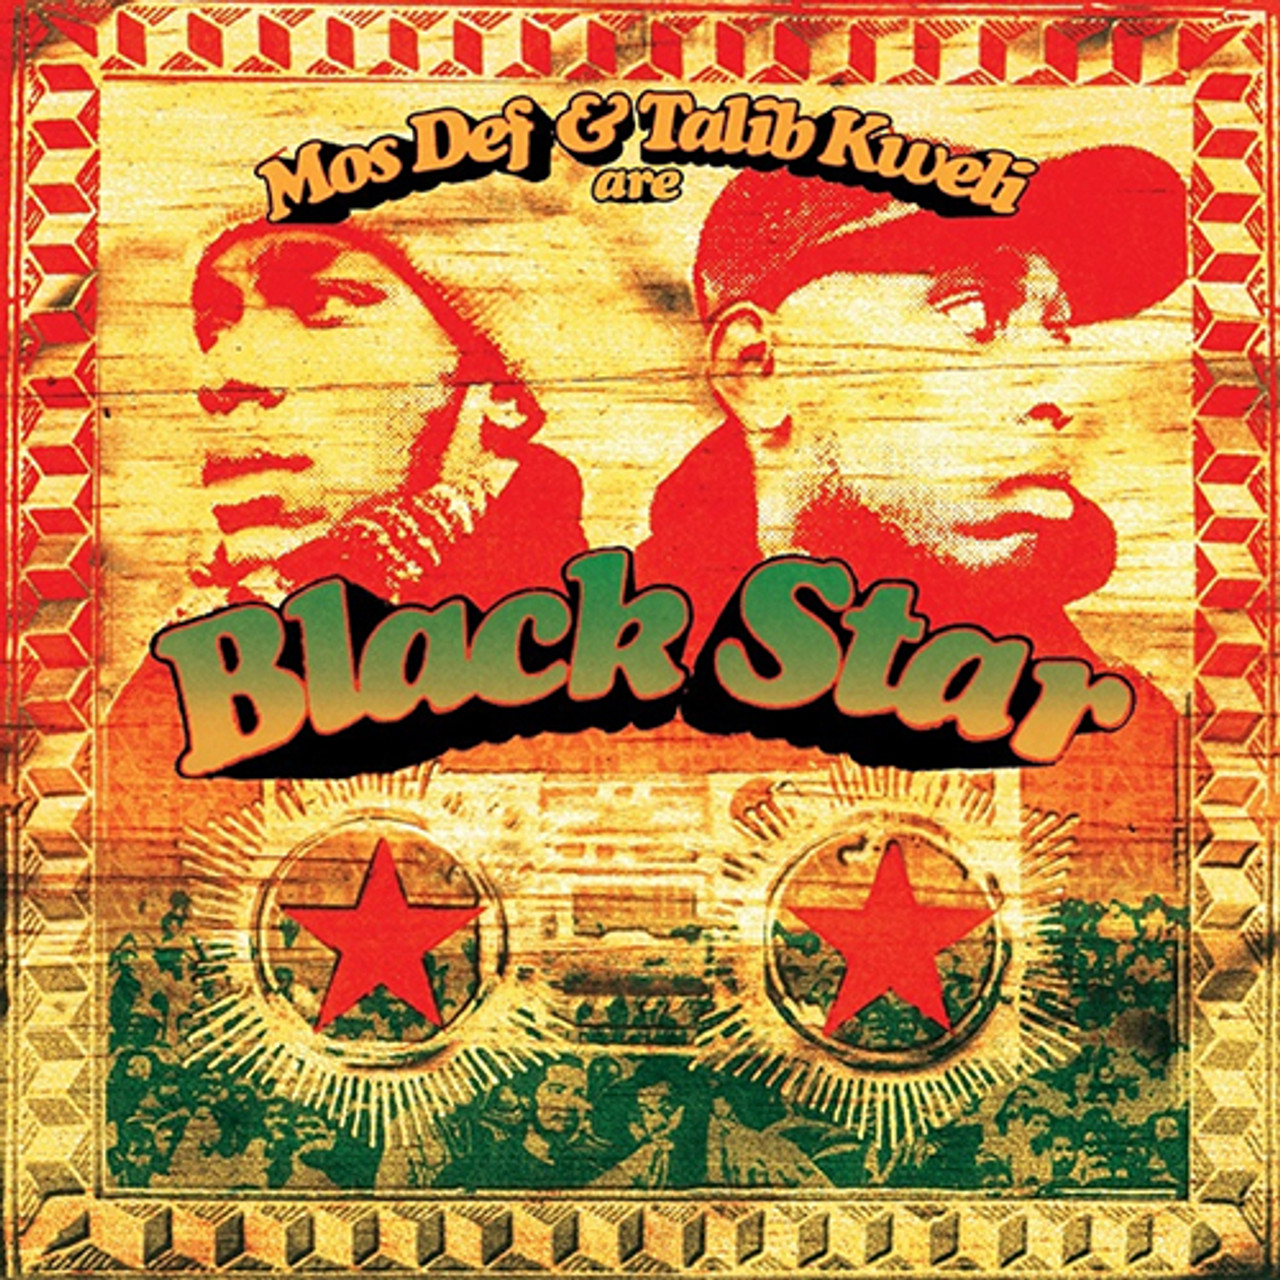 Black Star - Def And Talib Kweli Are Black Star (Picture LP) - Music Direct